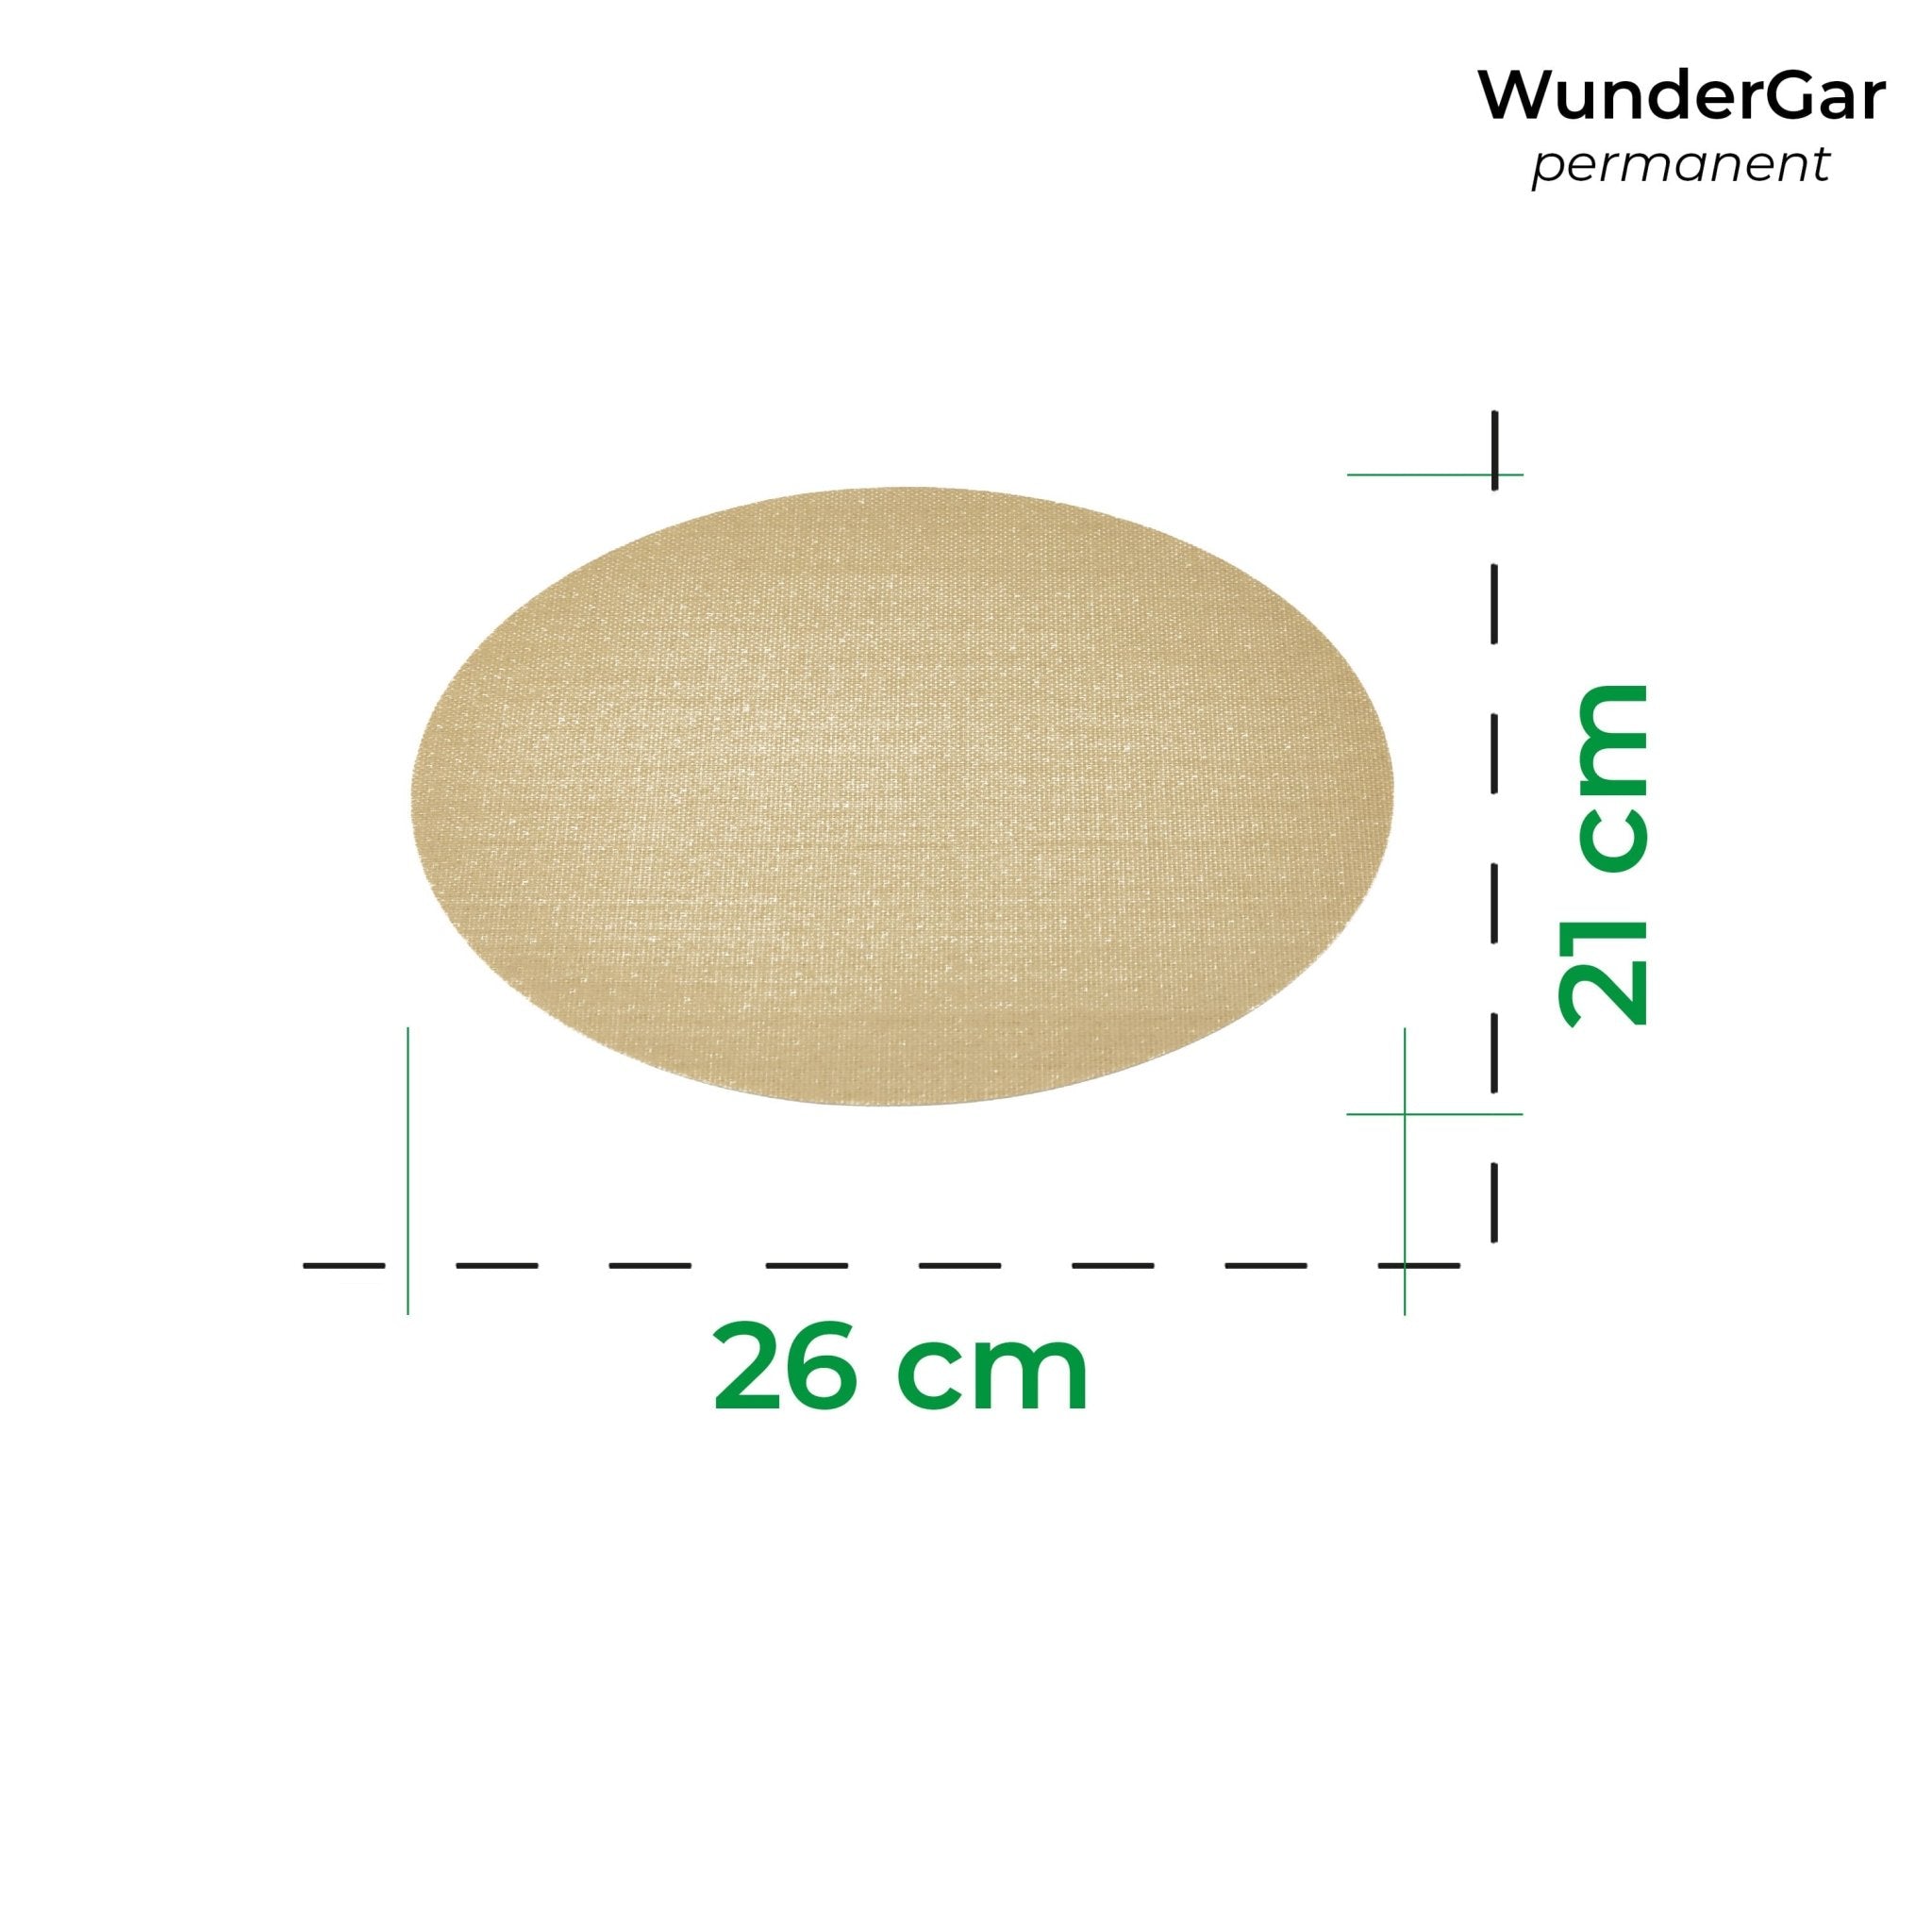 WunderGar® Permanent | Dauerbackfolie für Varoma - Wundermix GmbH